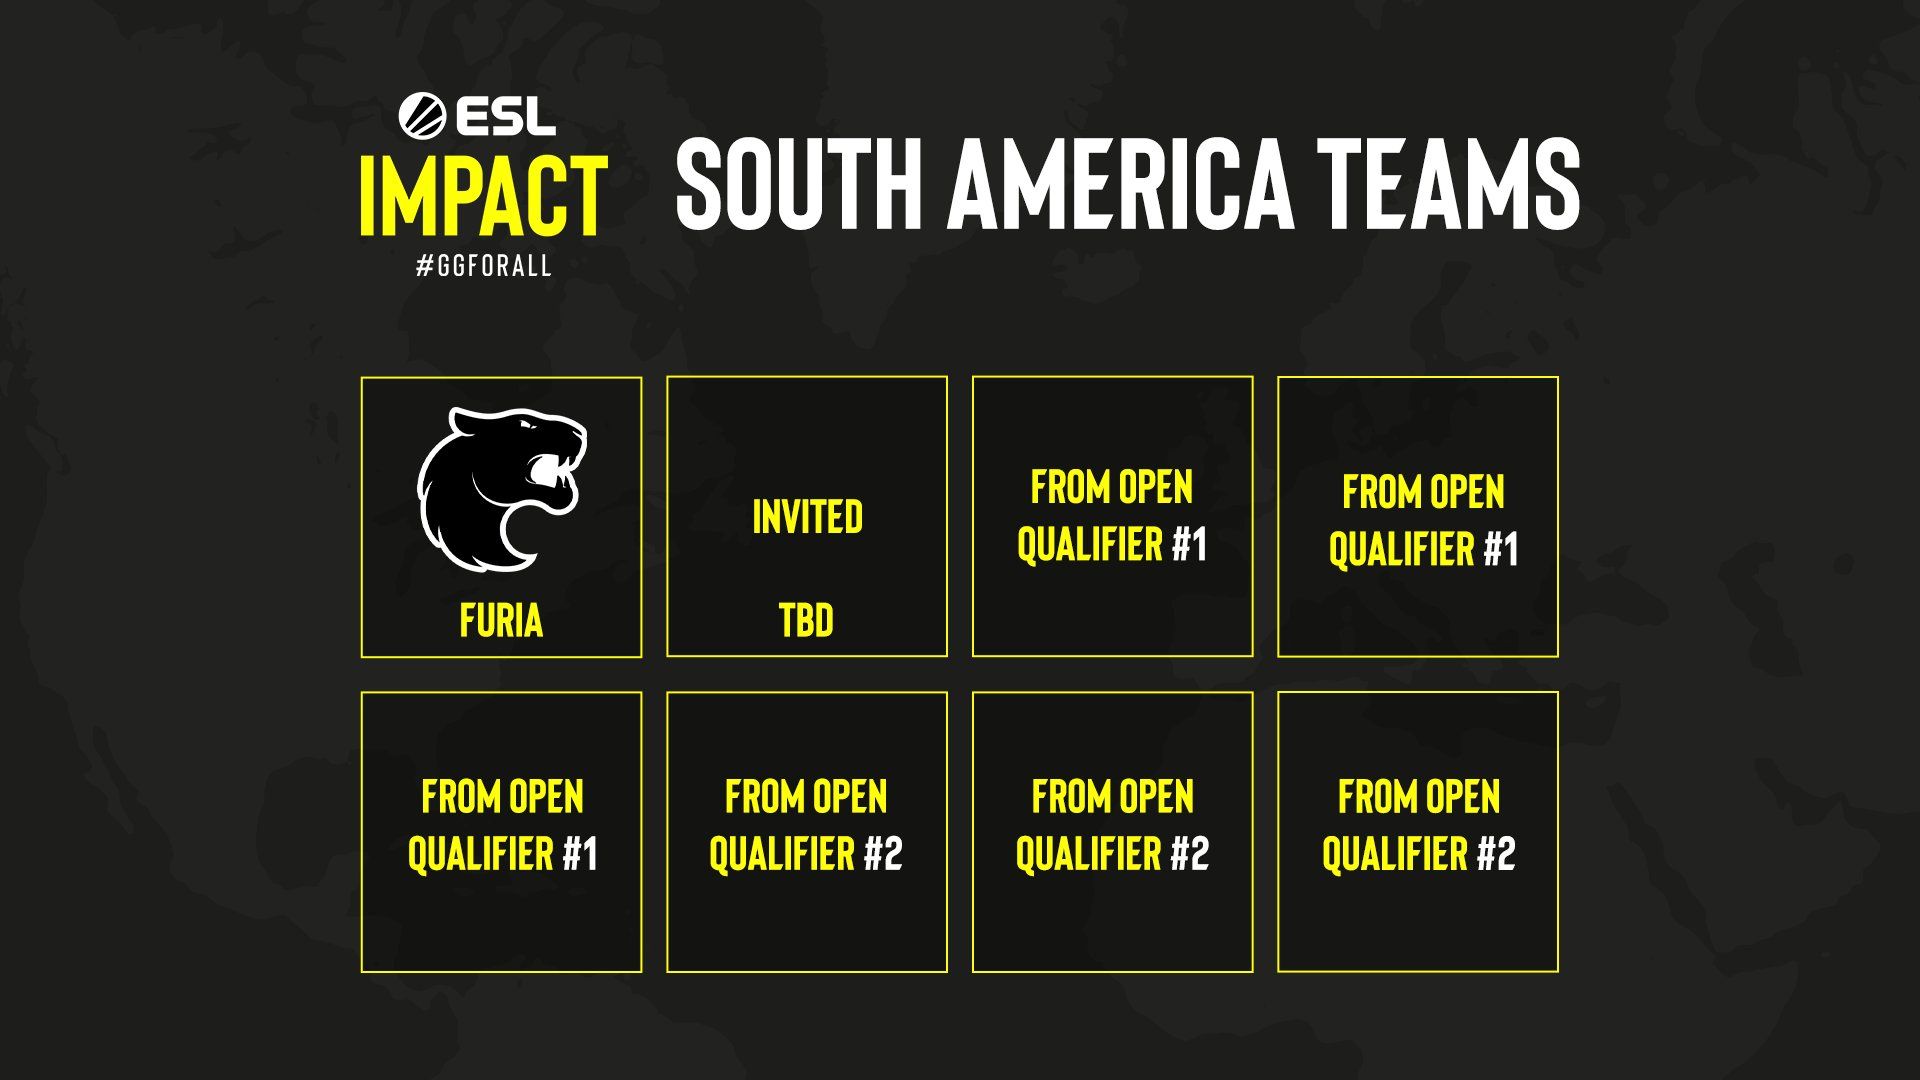 Участники ESL Impact League для Южной Америки.
Источник: ESL